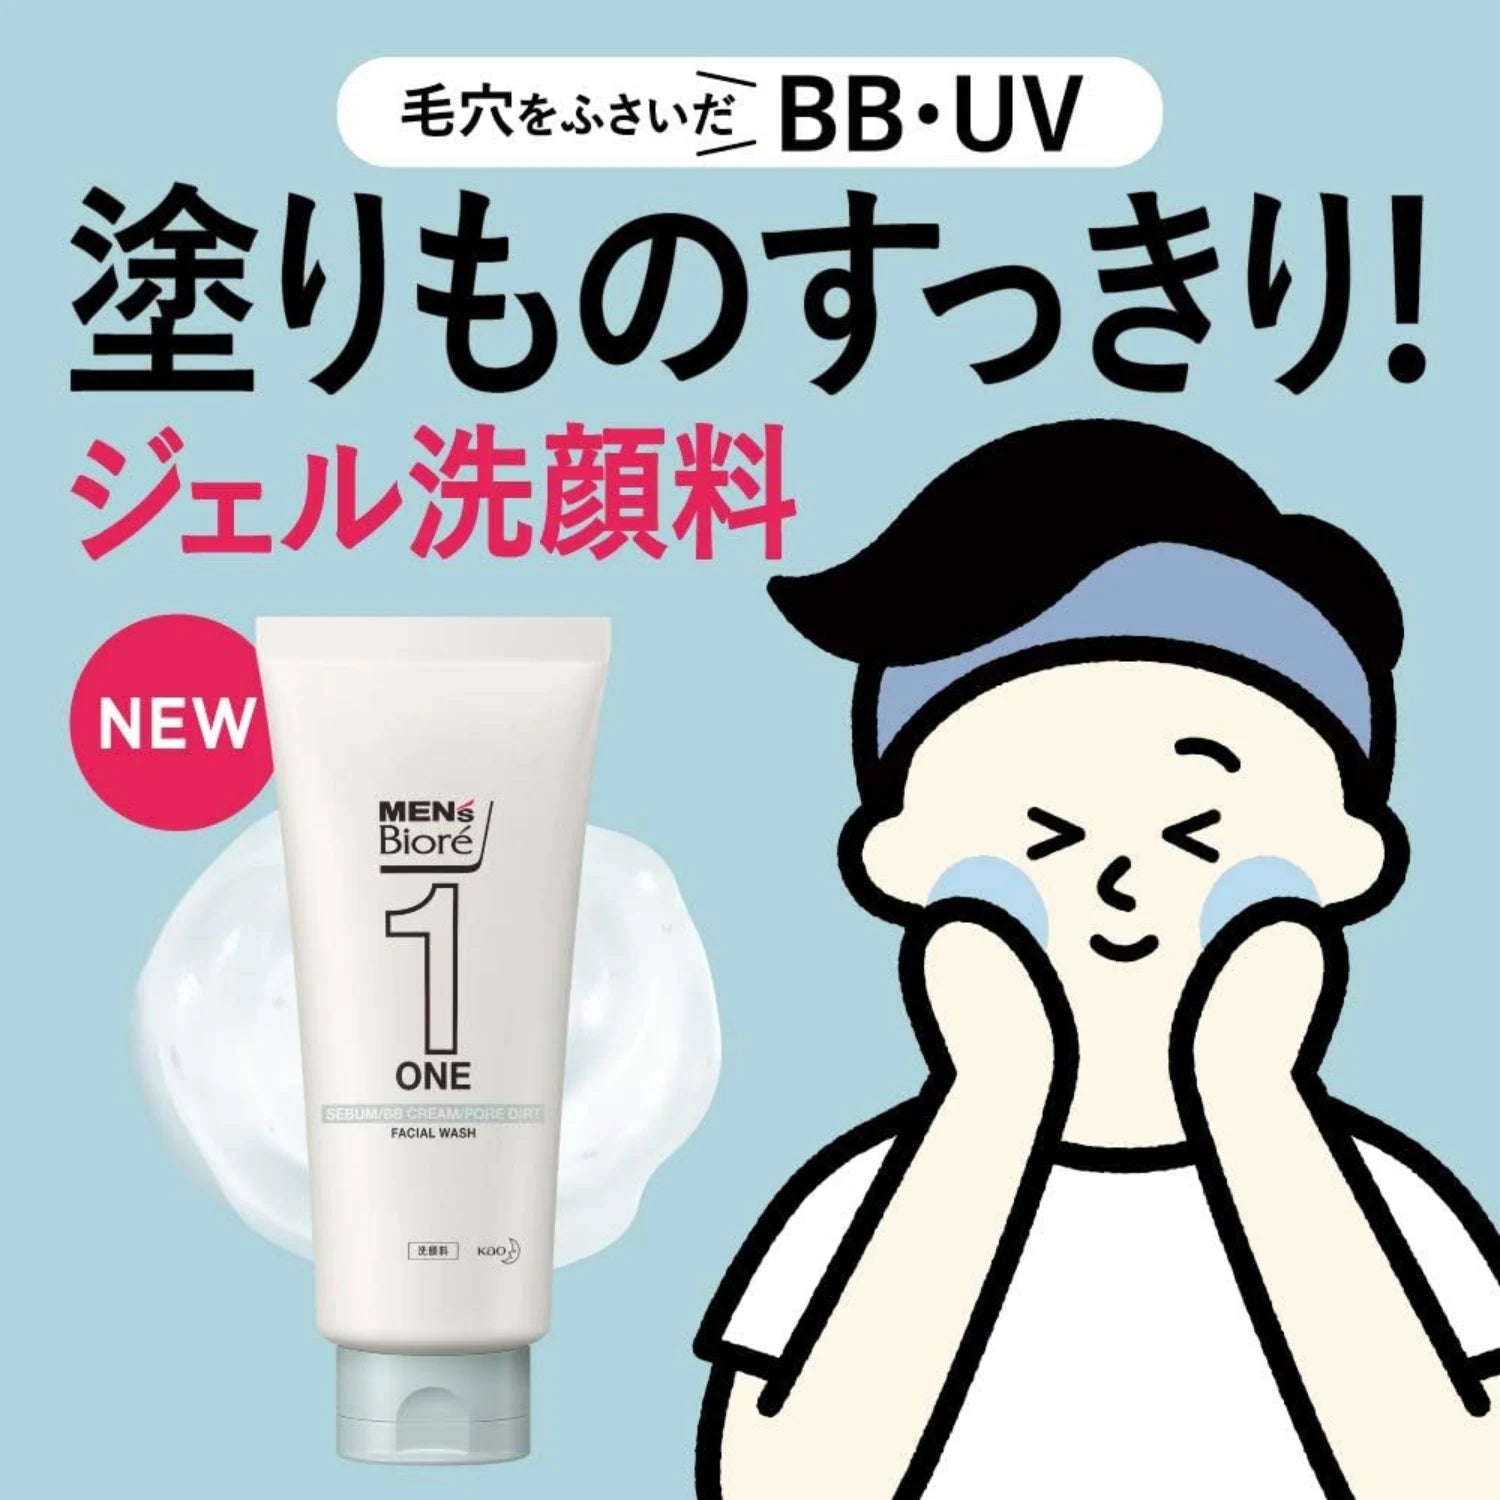 Biore Men's One Facial Cleansing Gel 200g - Buy Me Japan